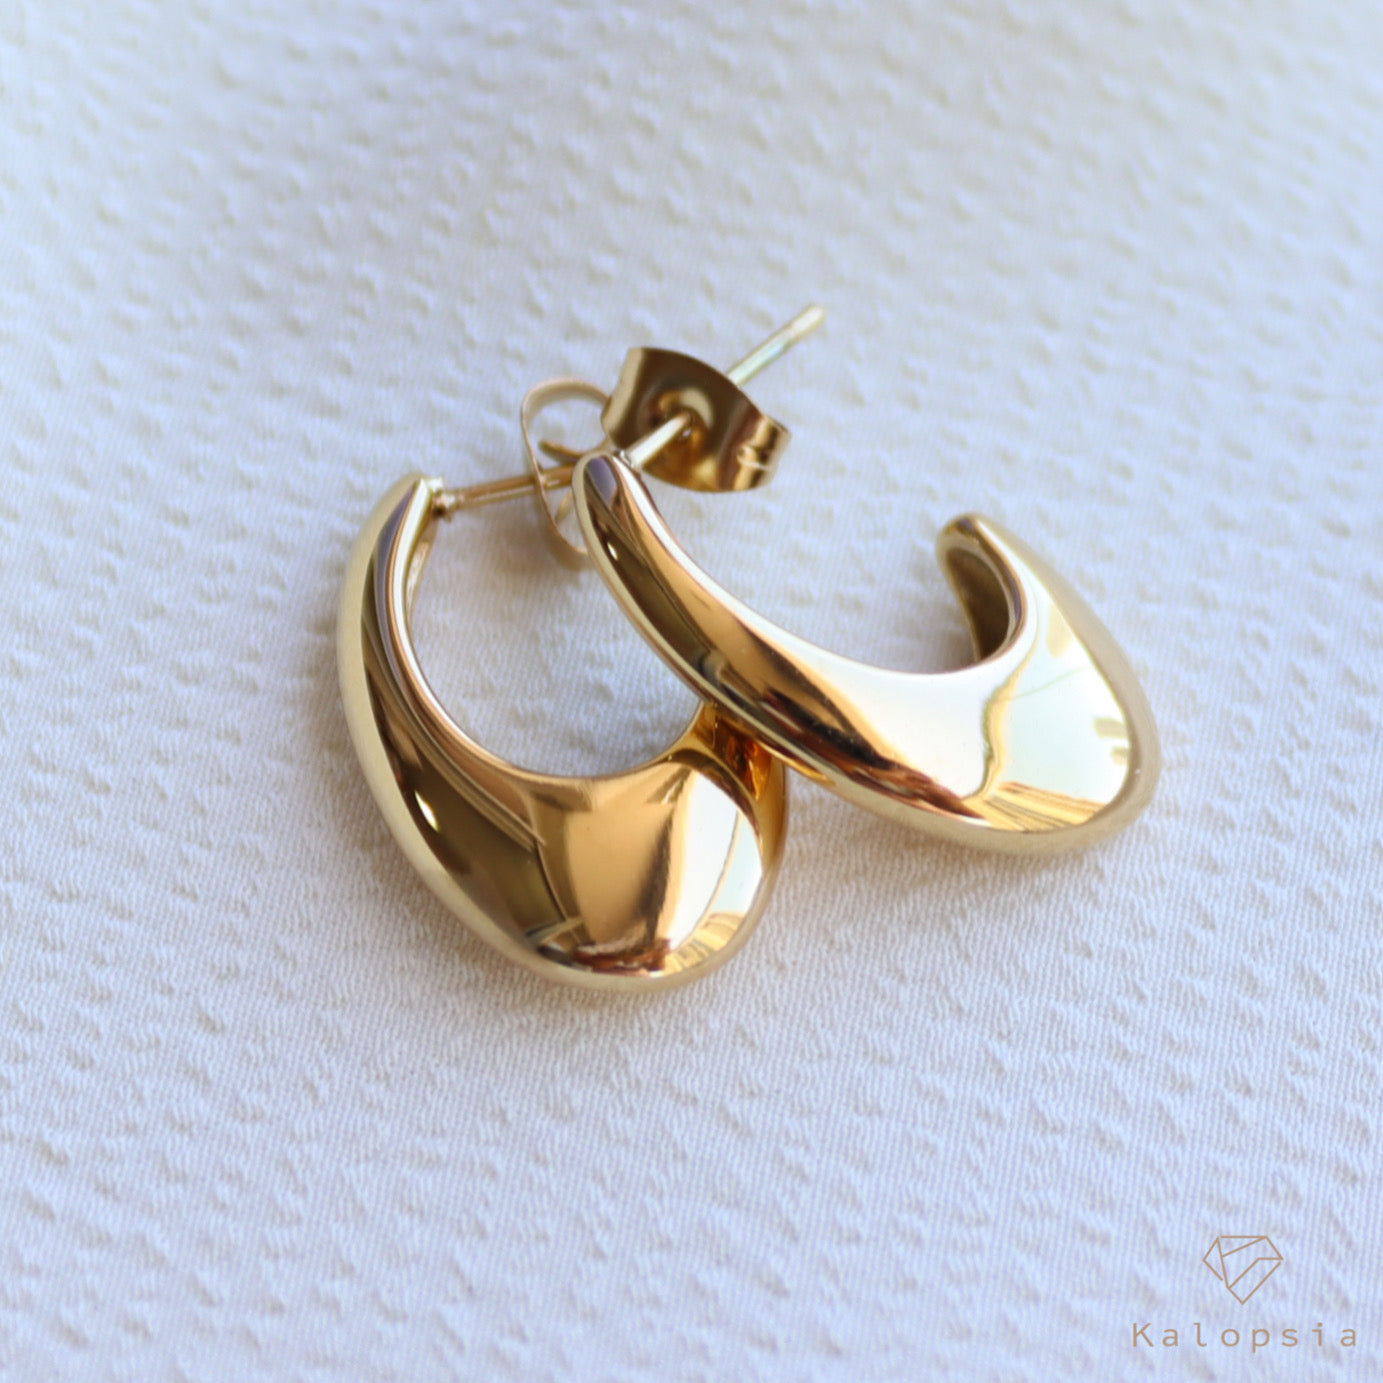 J Shape Earring - Kalopsia Accessories